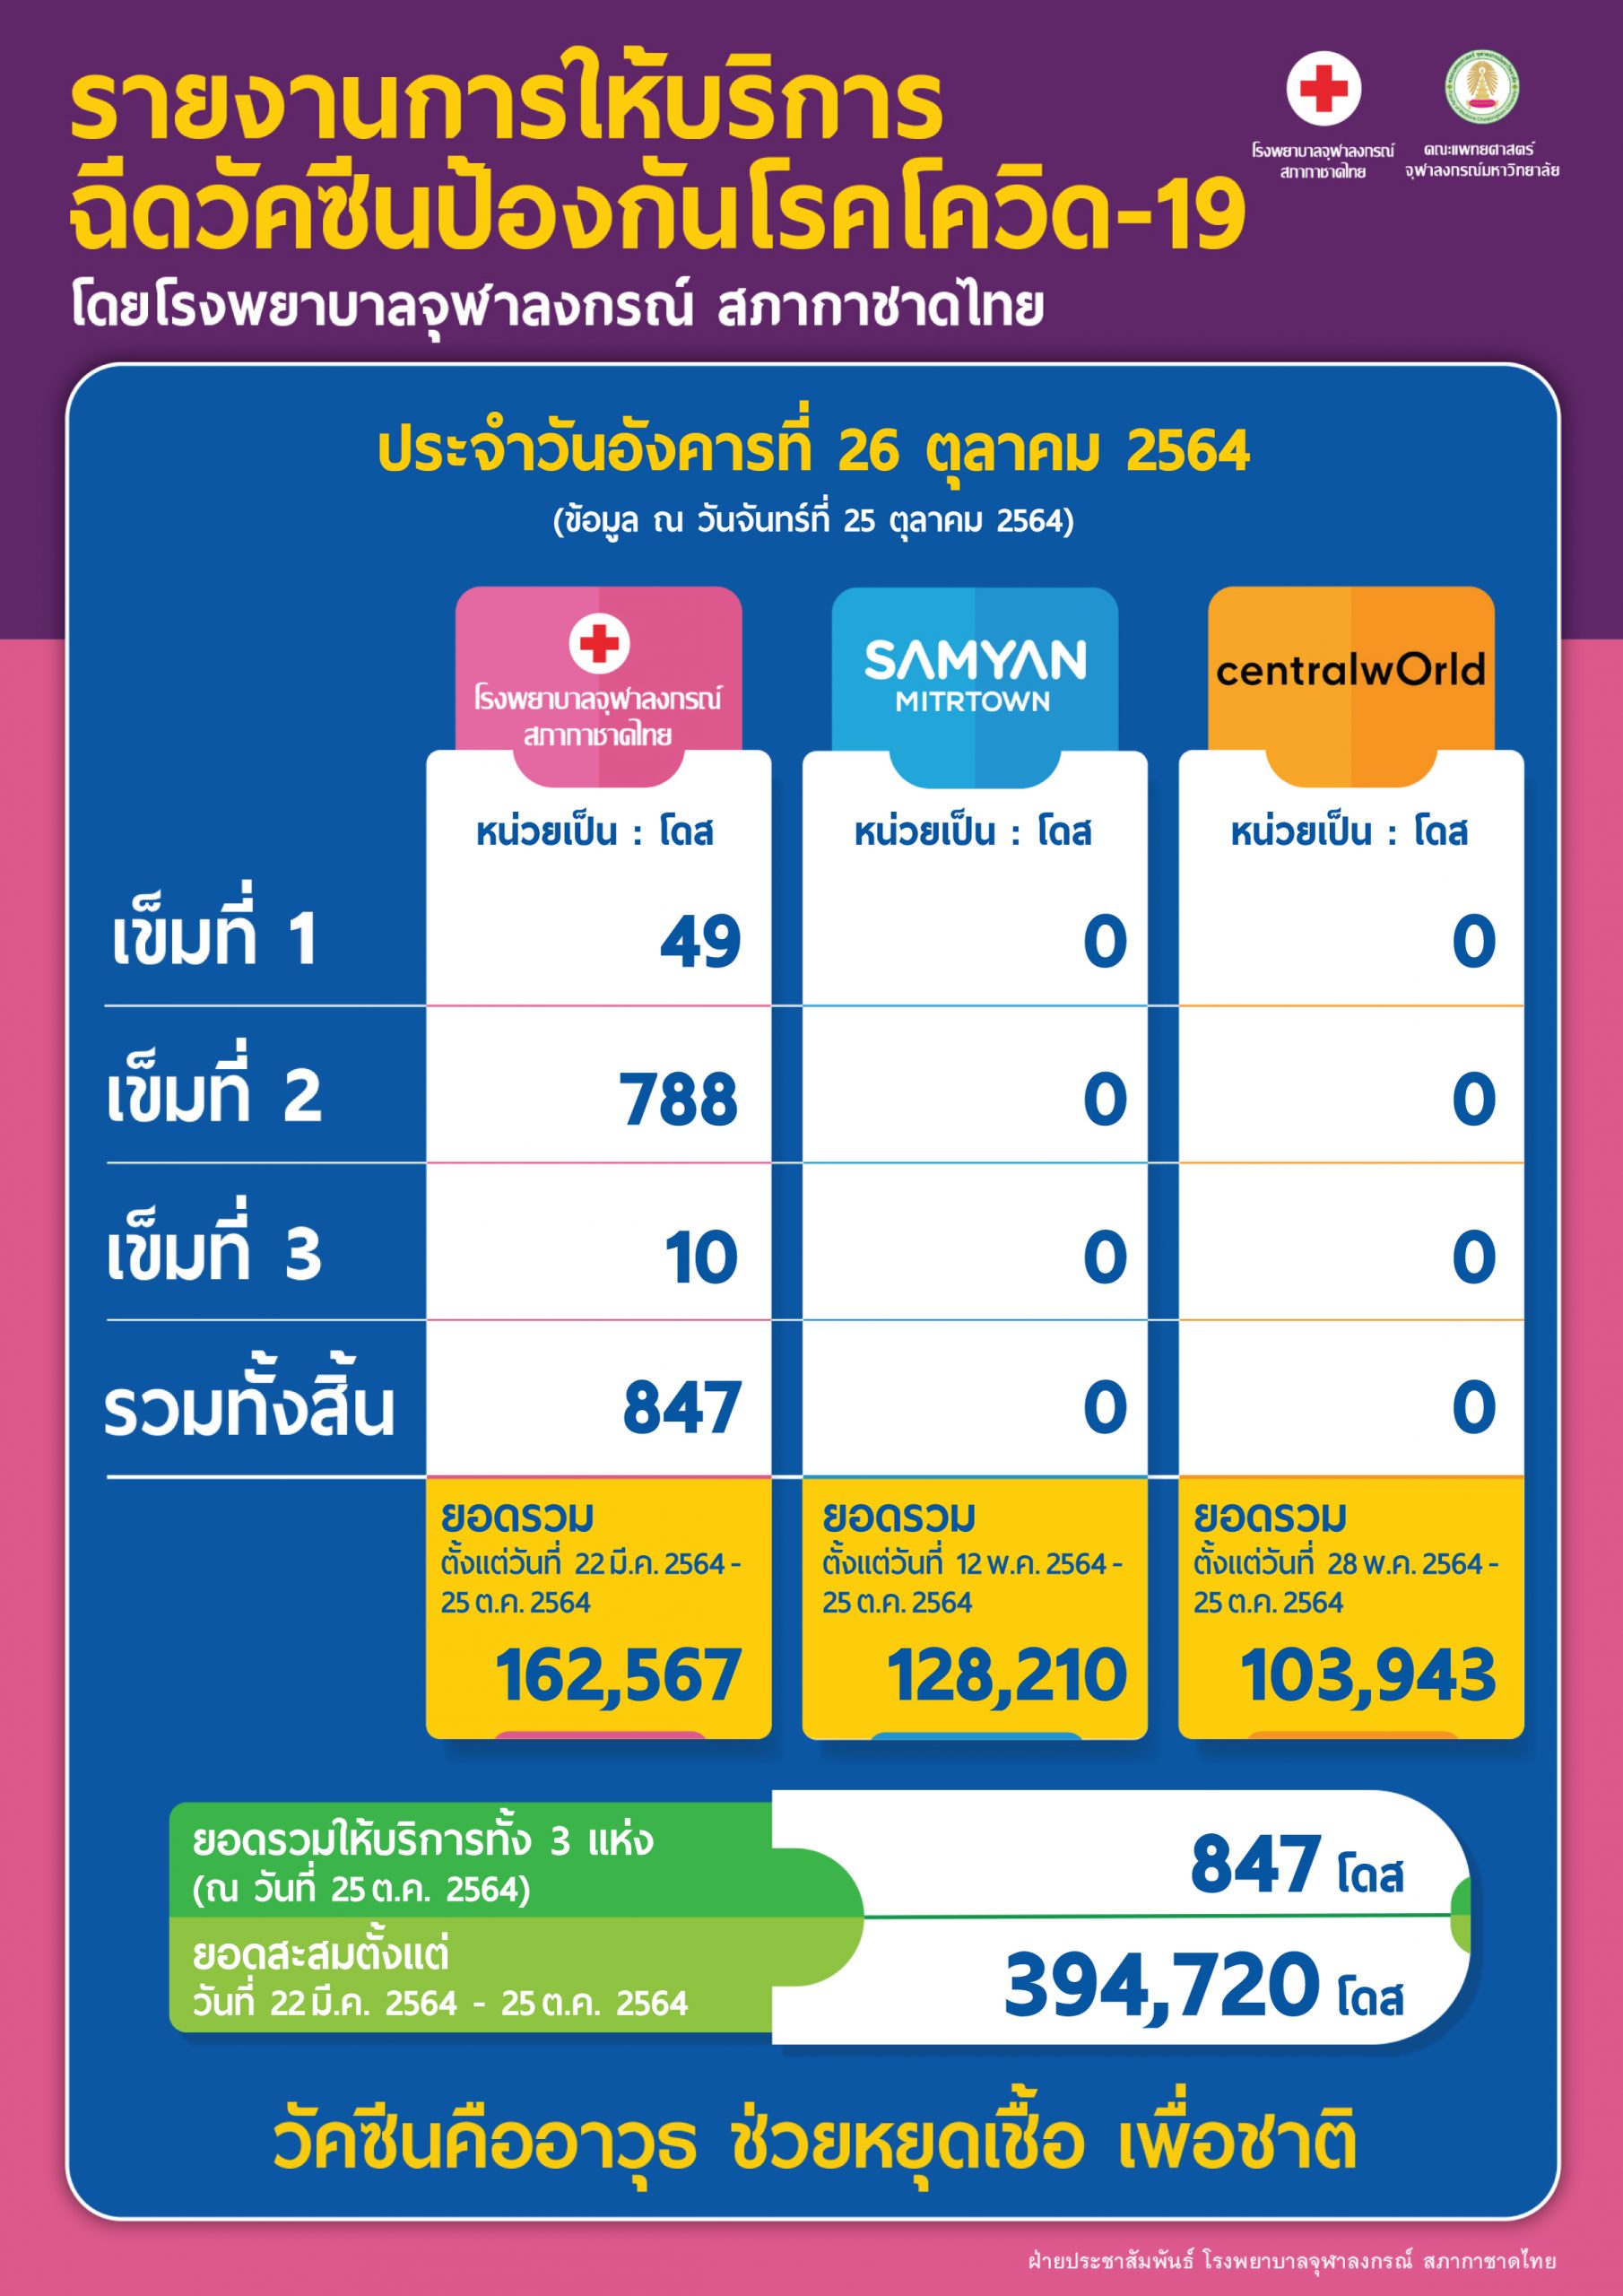 รายงานการให้บริการฉีดวัคซีนป้องกันโรคโควิด-19 โดยโรงพยาบาลจุฬาลงกรณ์ สภากาชาดไทย ประจำวันอังคารที่ 26 ตุลาคม 2564